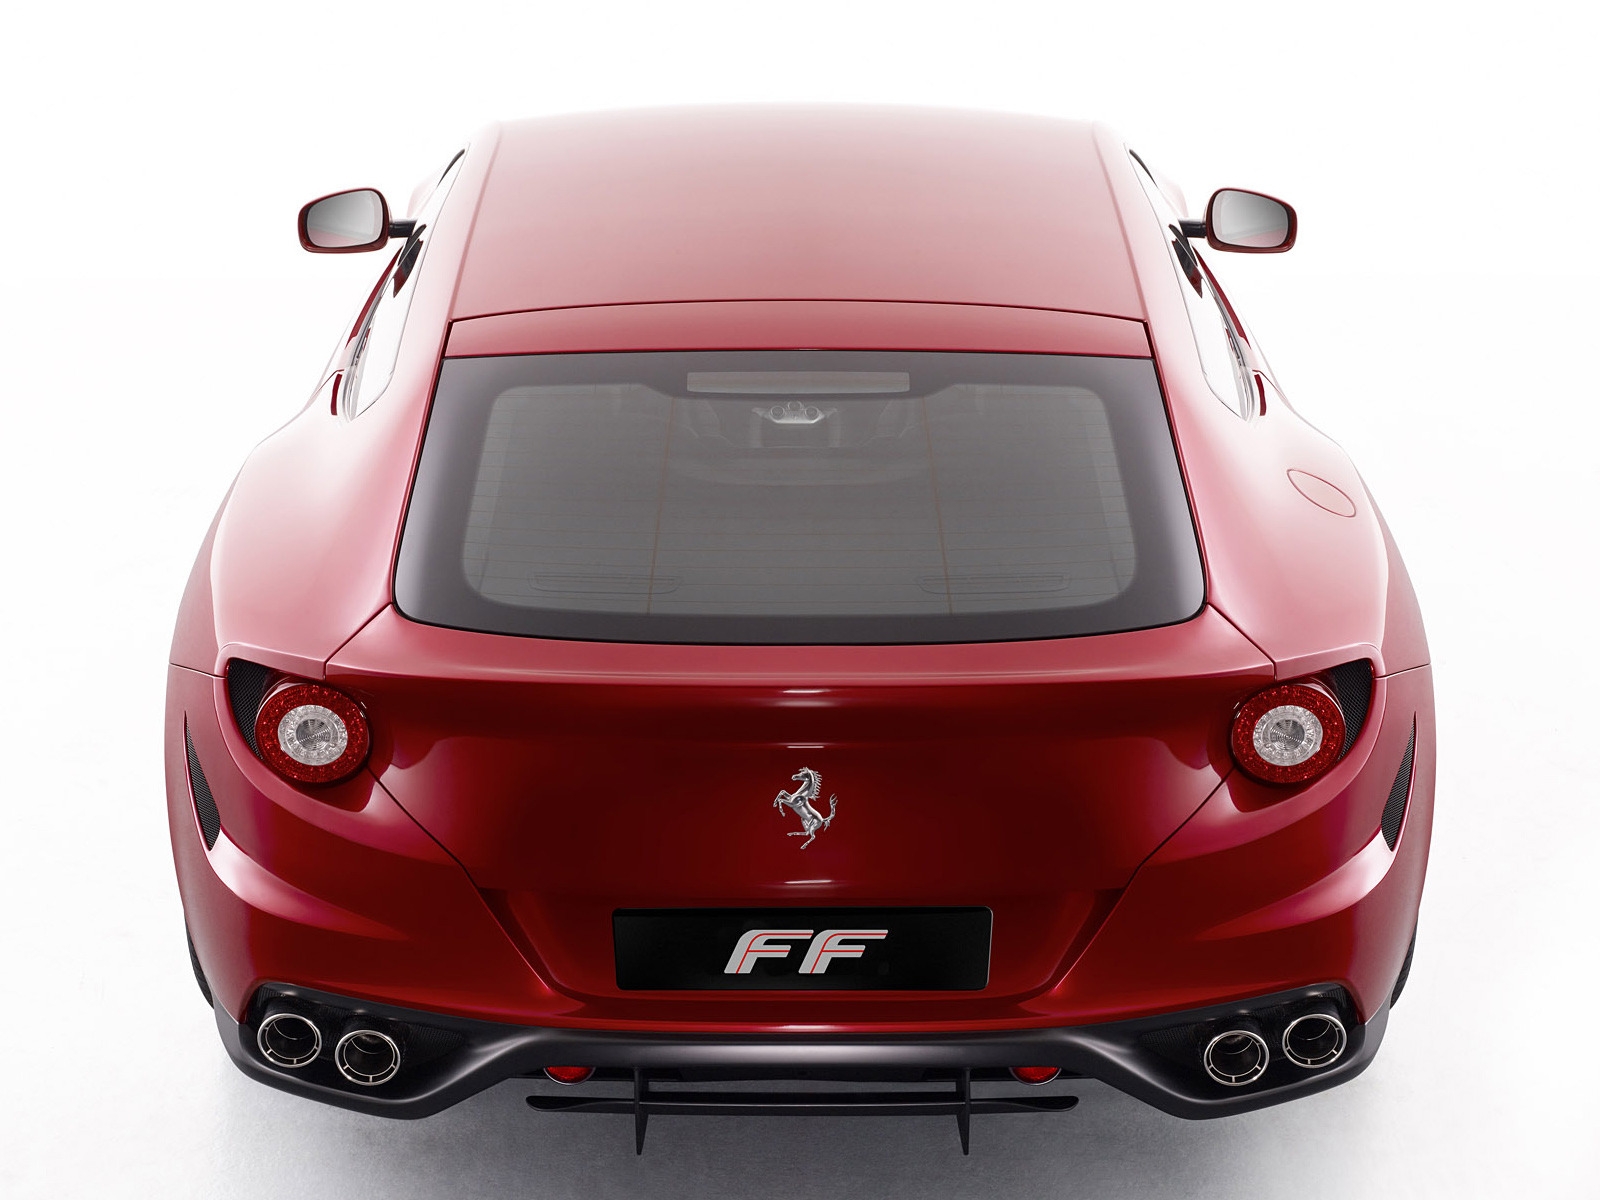 Ferrari FF Rear for 1600 x 1200 resolution